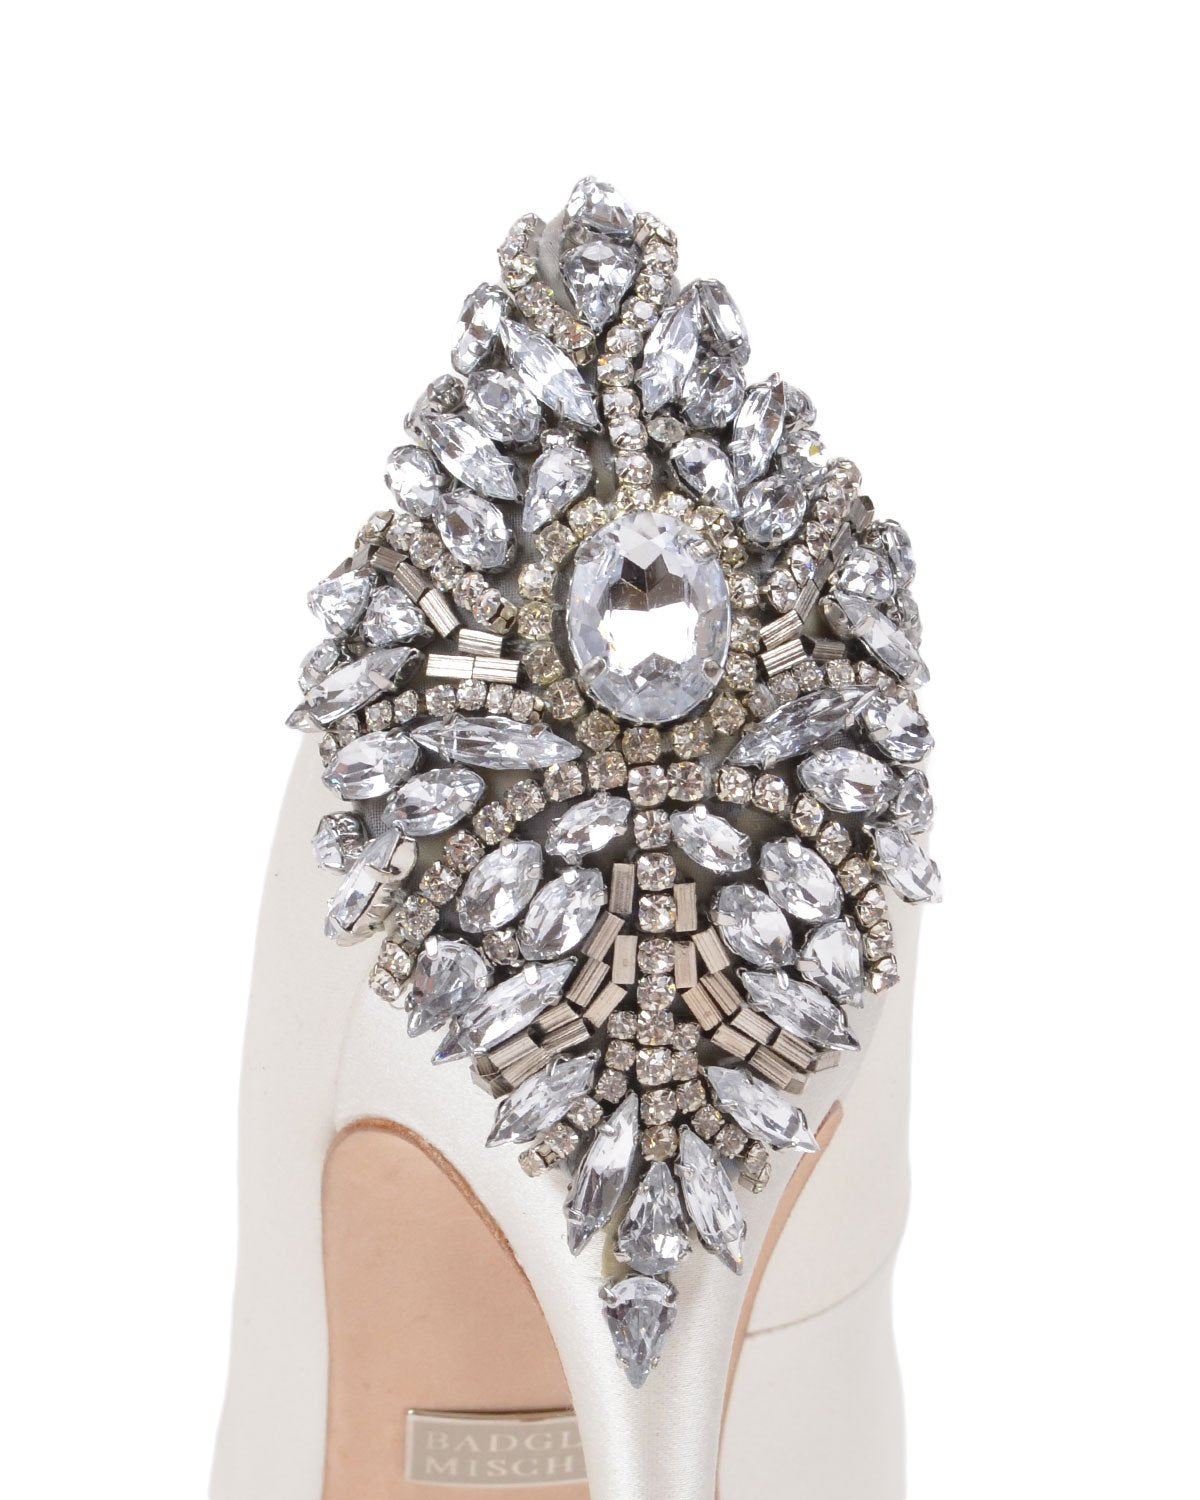 Badgley Mischka Australia - Kiara - White - Wedding Shoes Sydney